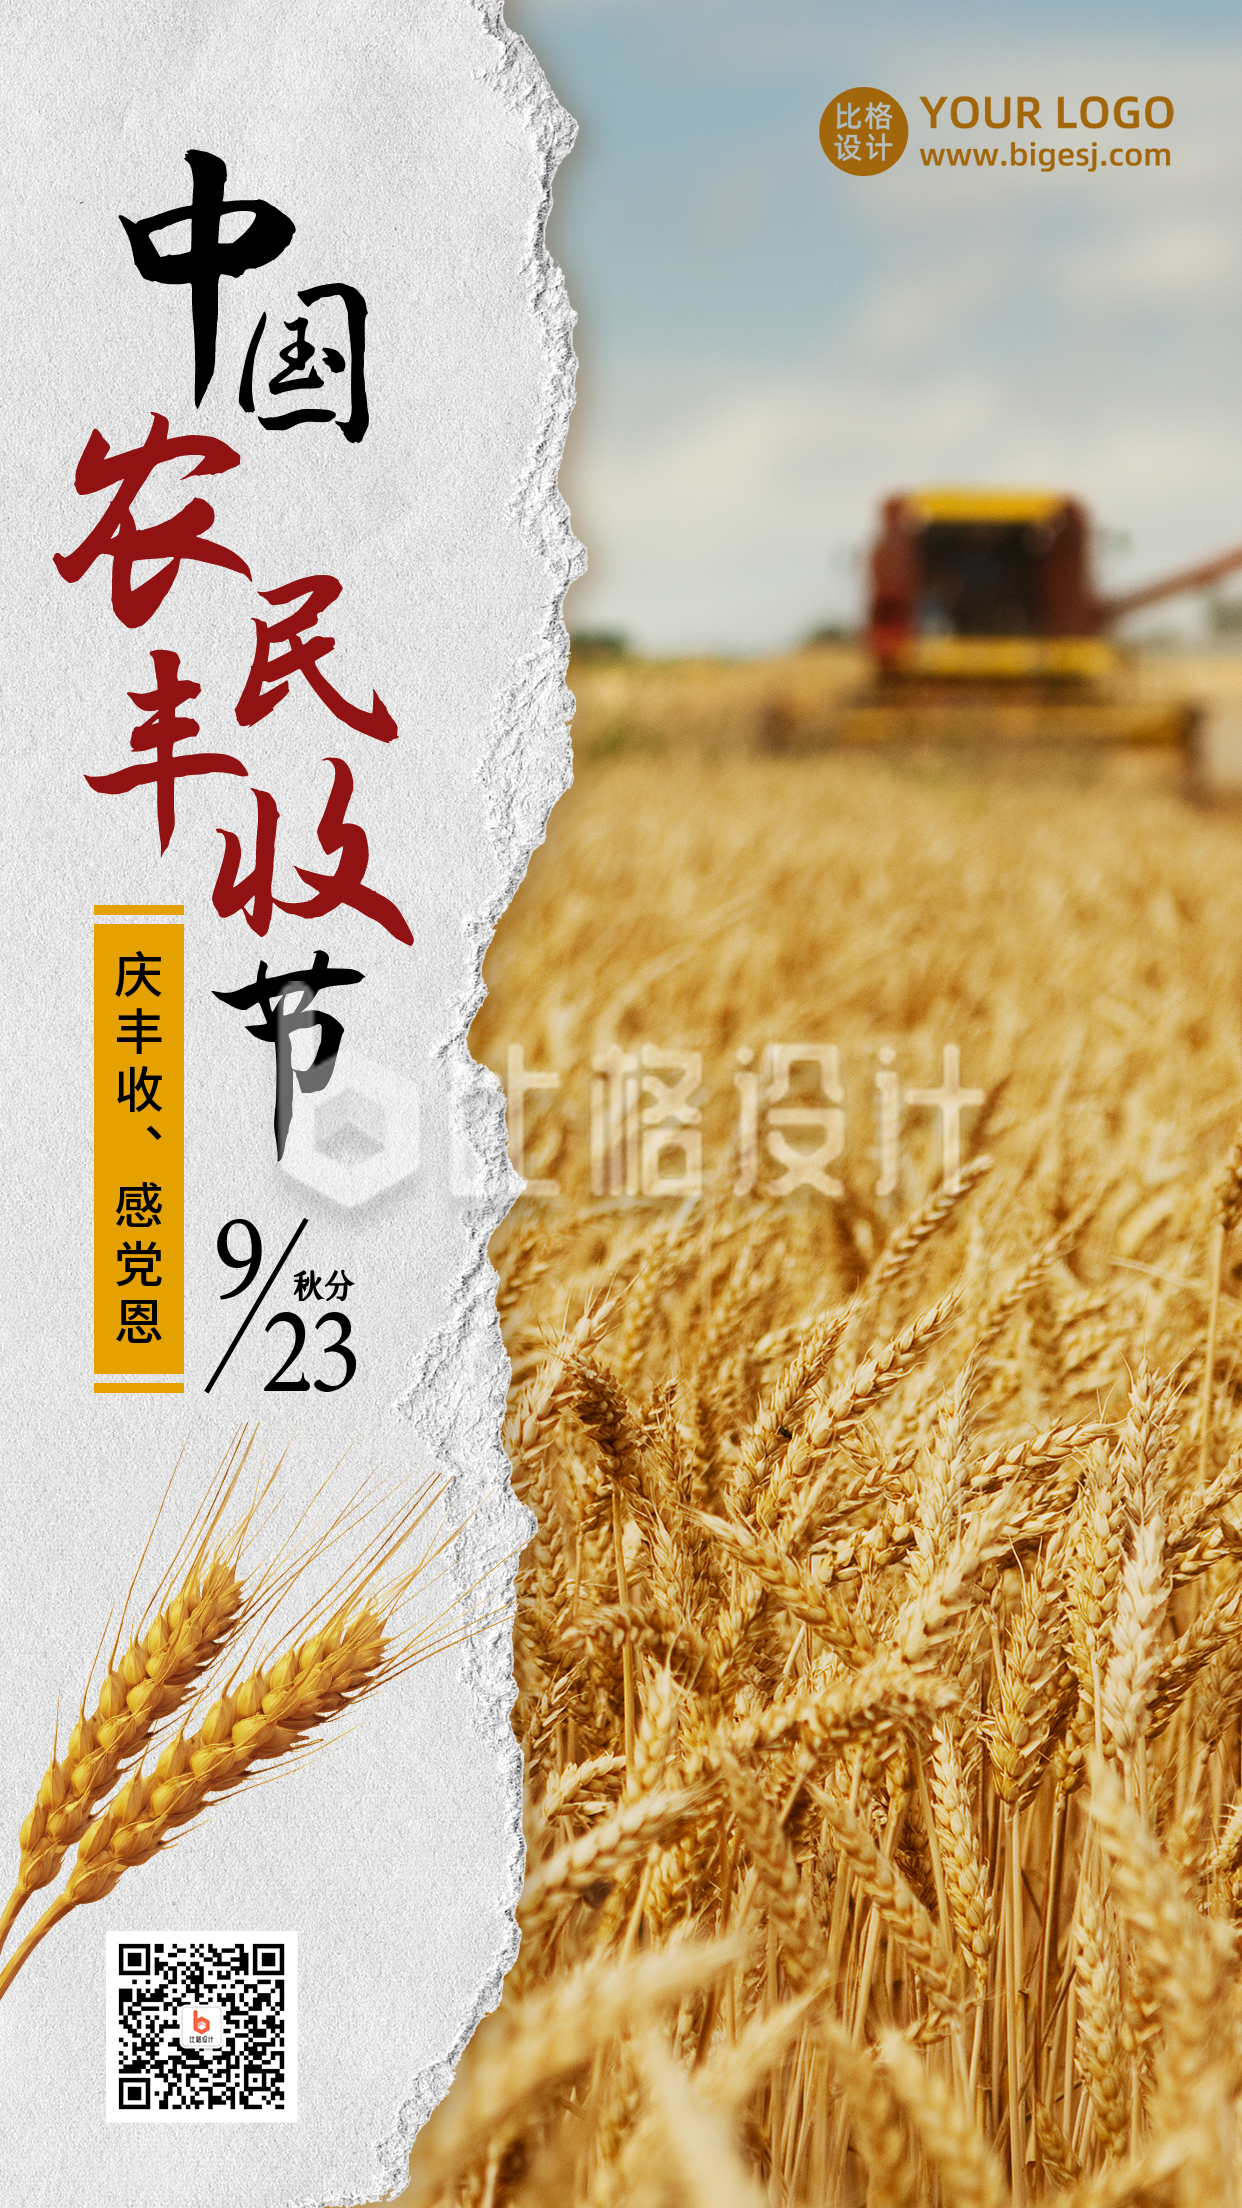 中国农民丰收节农耕实景简约手机海报